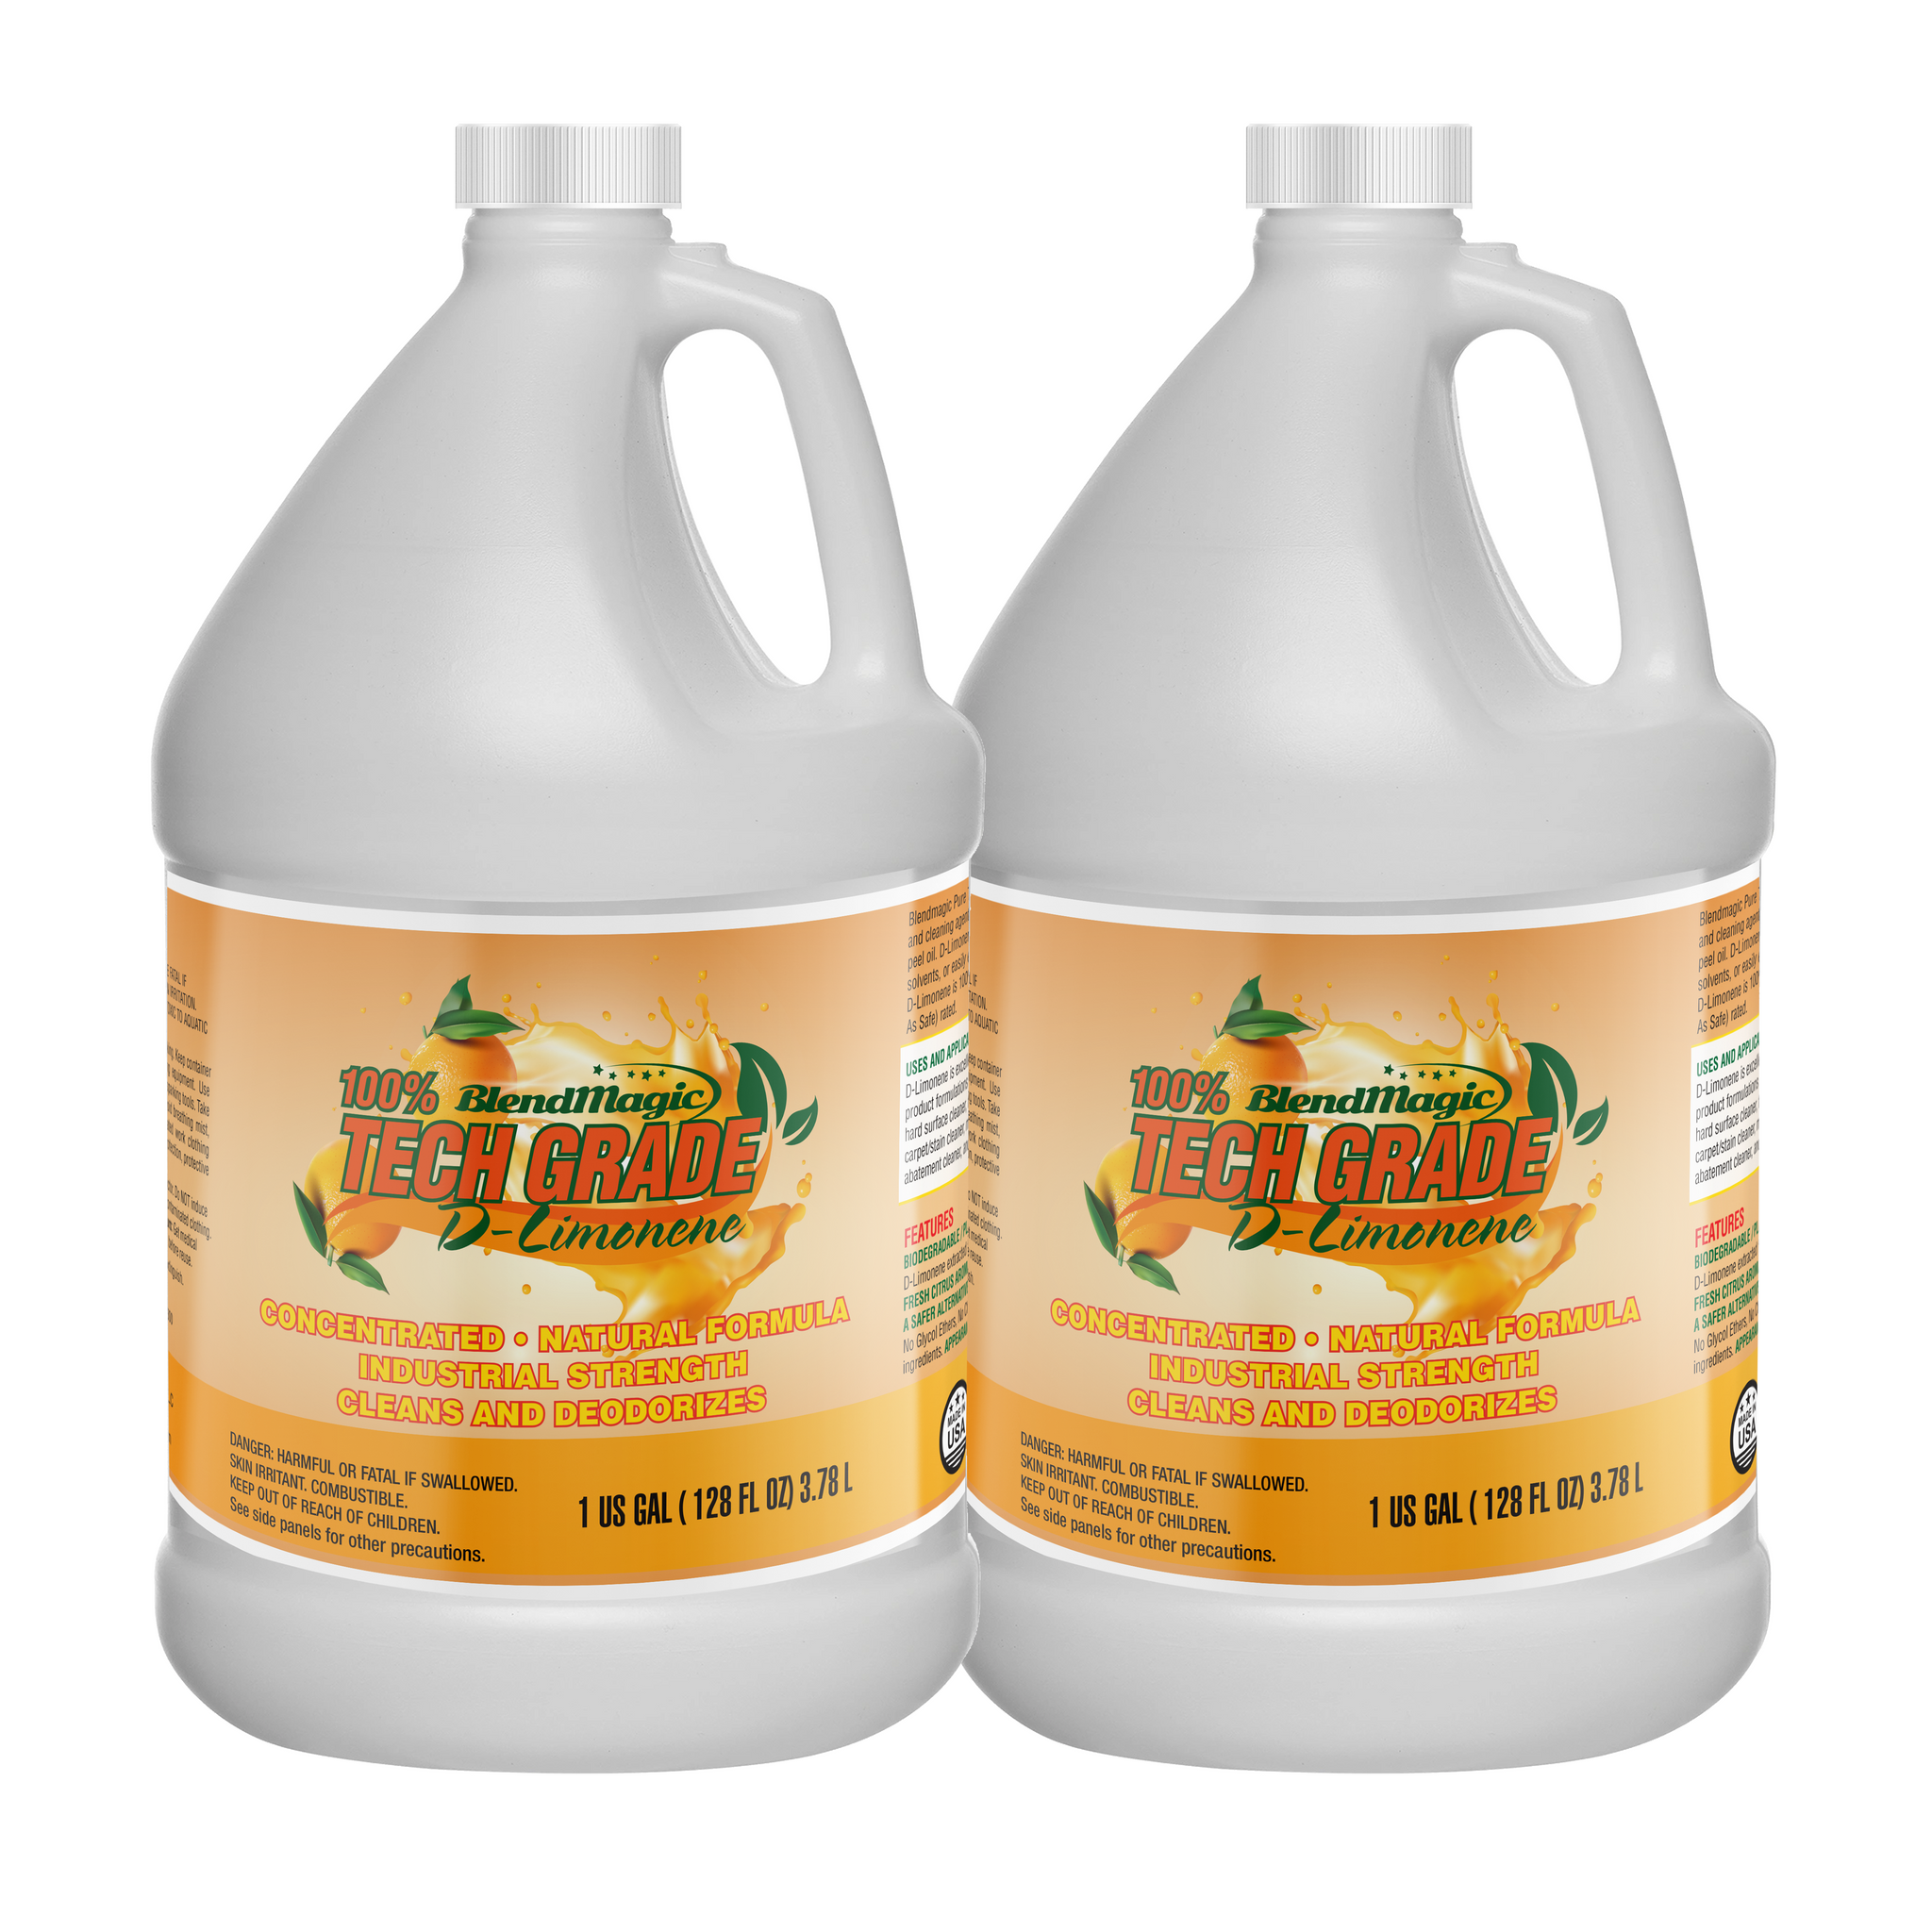 D-Limonene / Biodegradable / Citrus Solvent / 2 Gallon Case